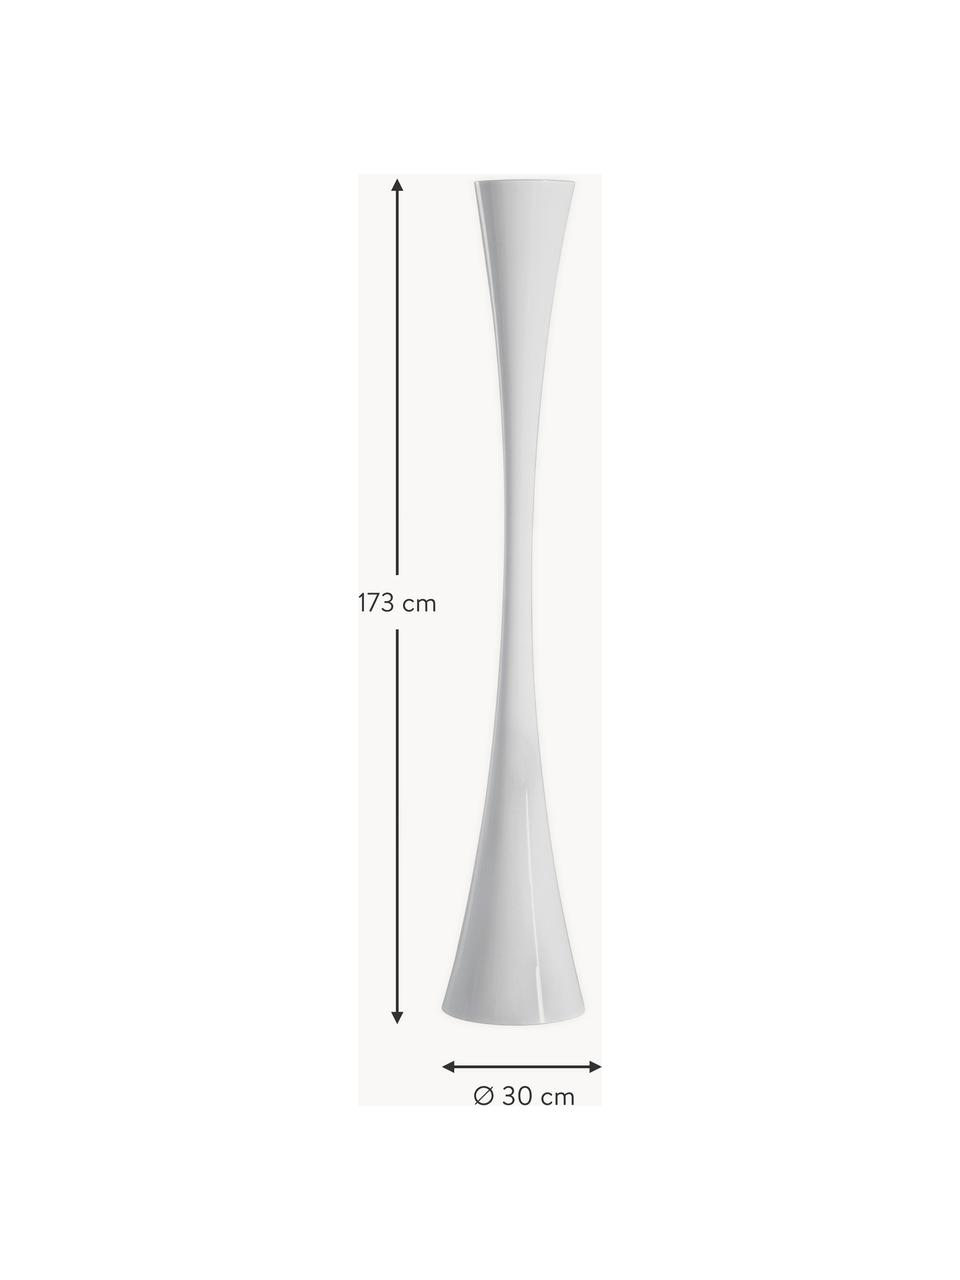 Grote LED vloerlamp Biconica, Kunststof, Wit, H 173 cm